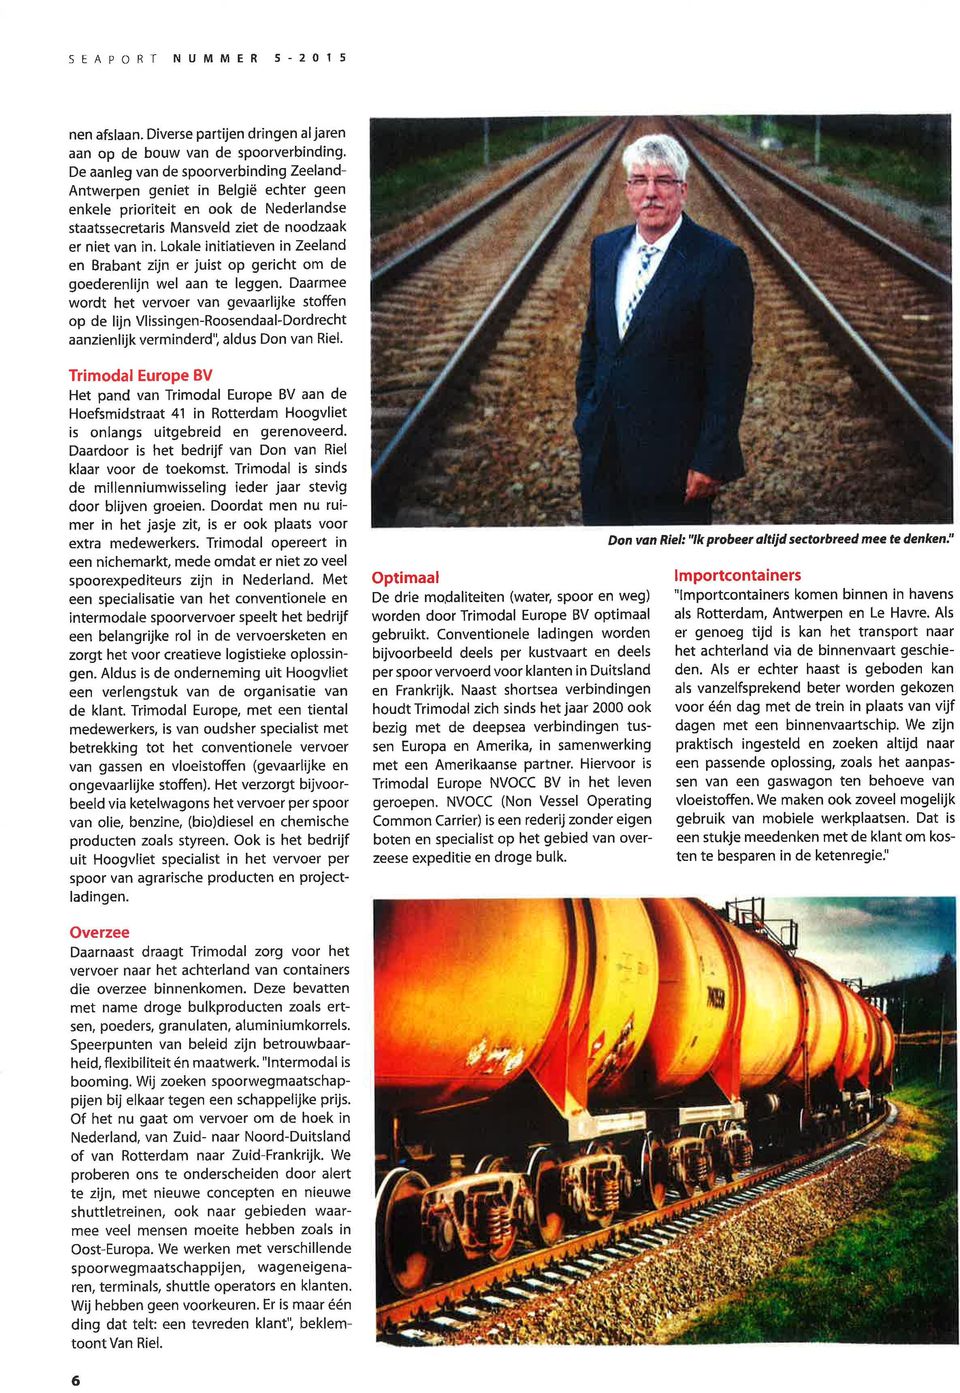 Lokale initiatieven in Zeeland en Brabant zijn er juist op gericht om de goederenlijn wel aan te leggen.